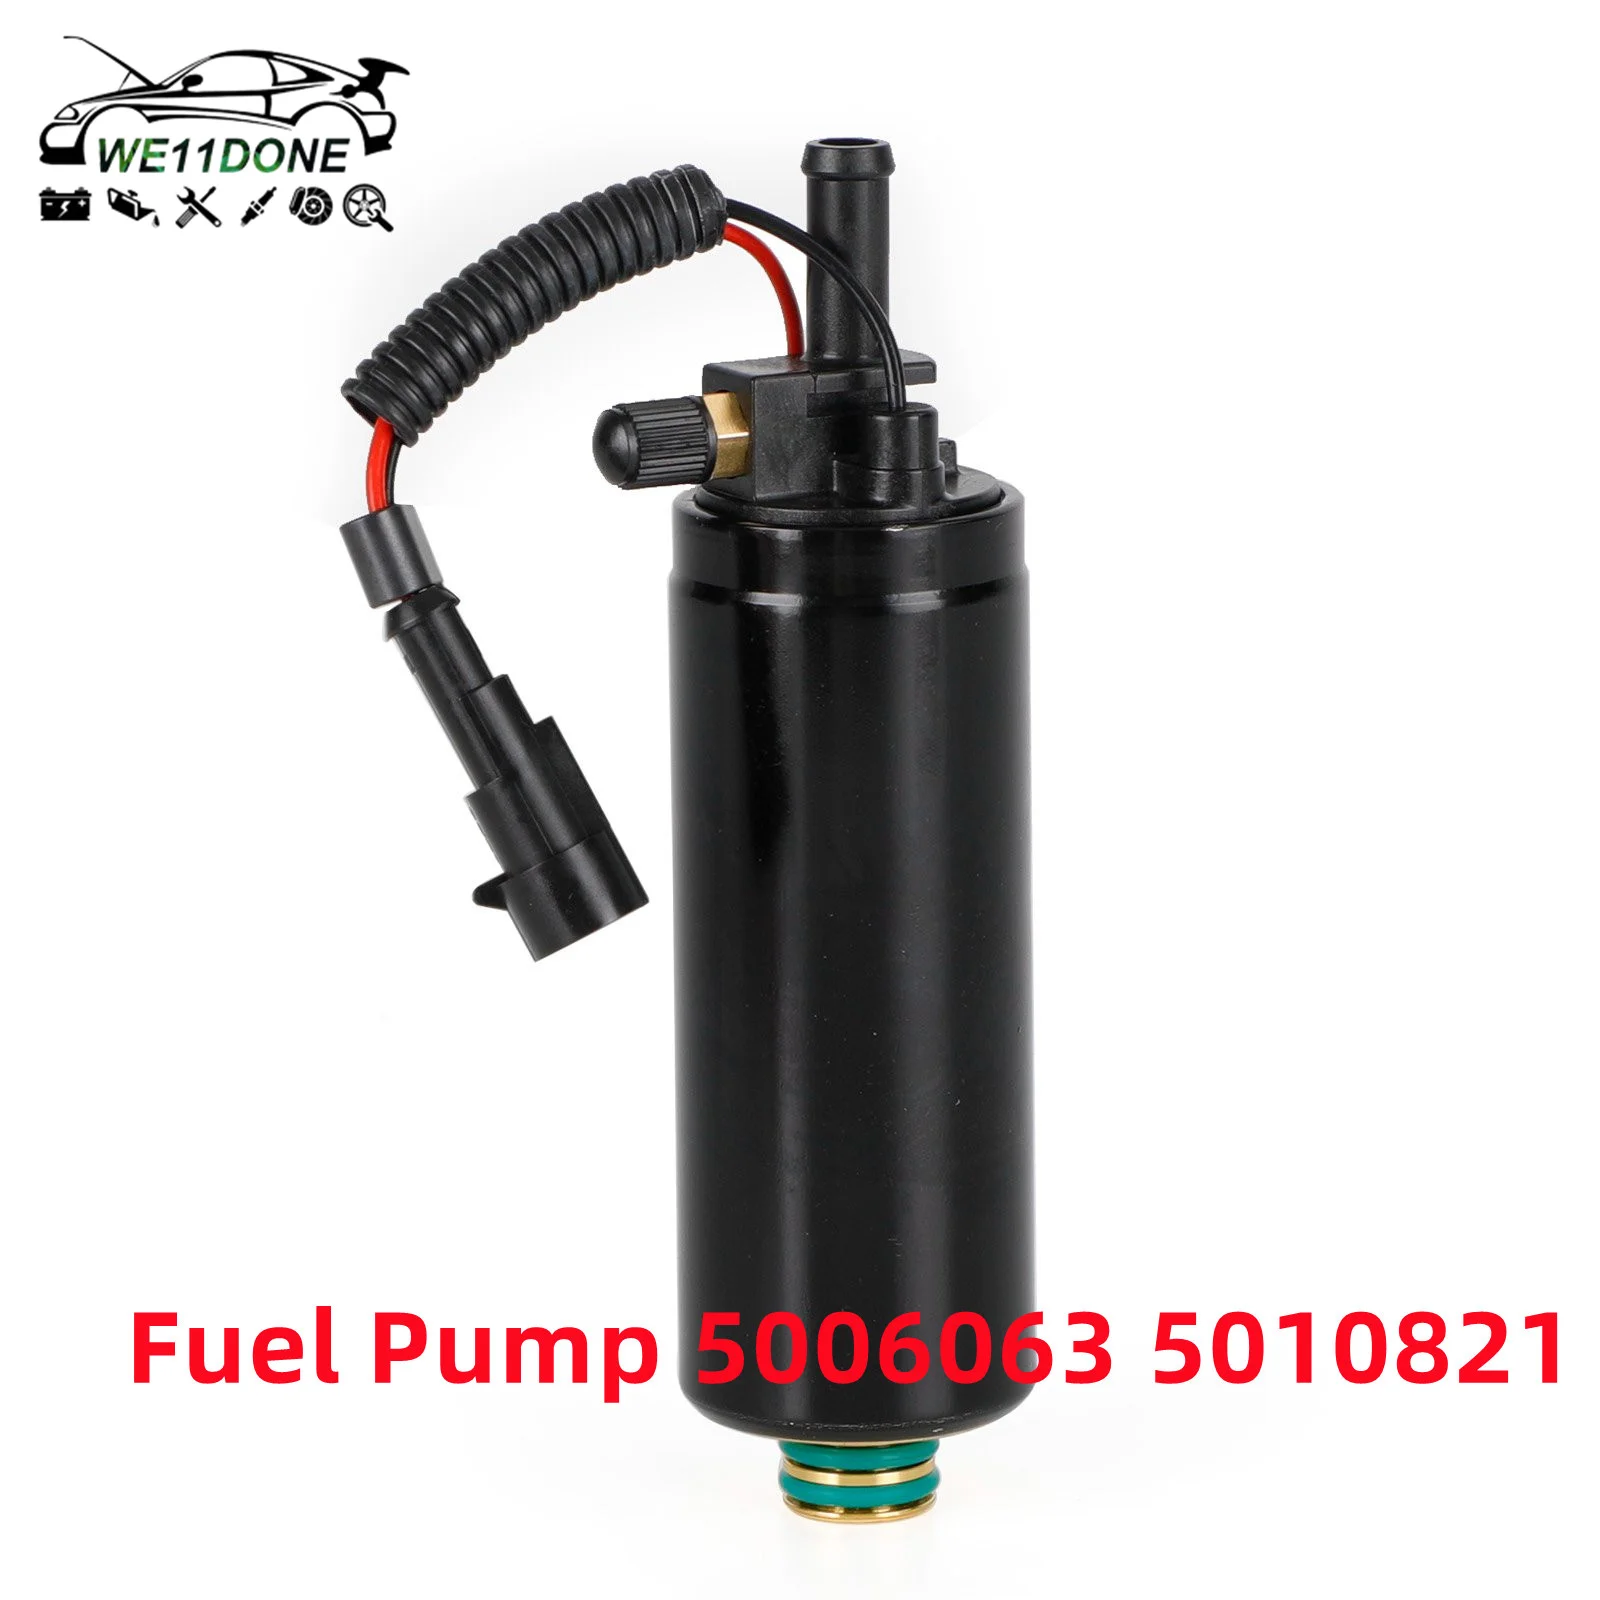 

Fuel Pump 5006063 5010821 For Johnson Evinrude 200 225 250 300 HP E-TEC 90 DEG 3.3 / 3.4L Fuel Pump